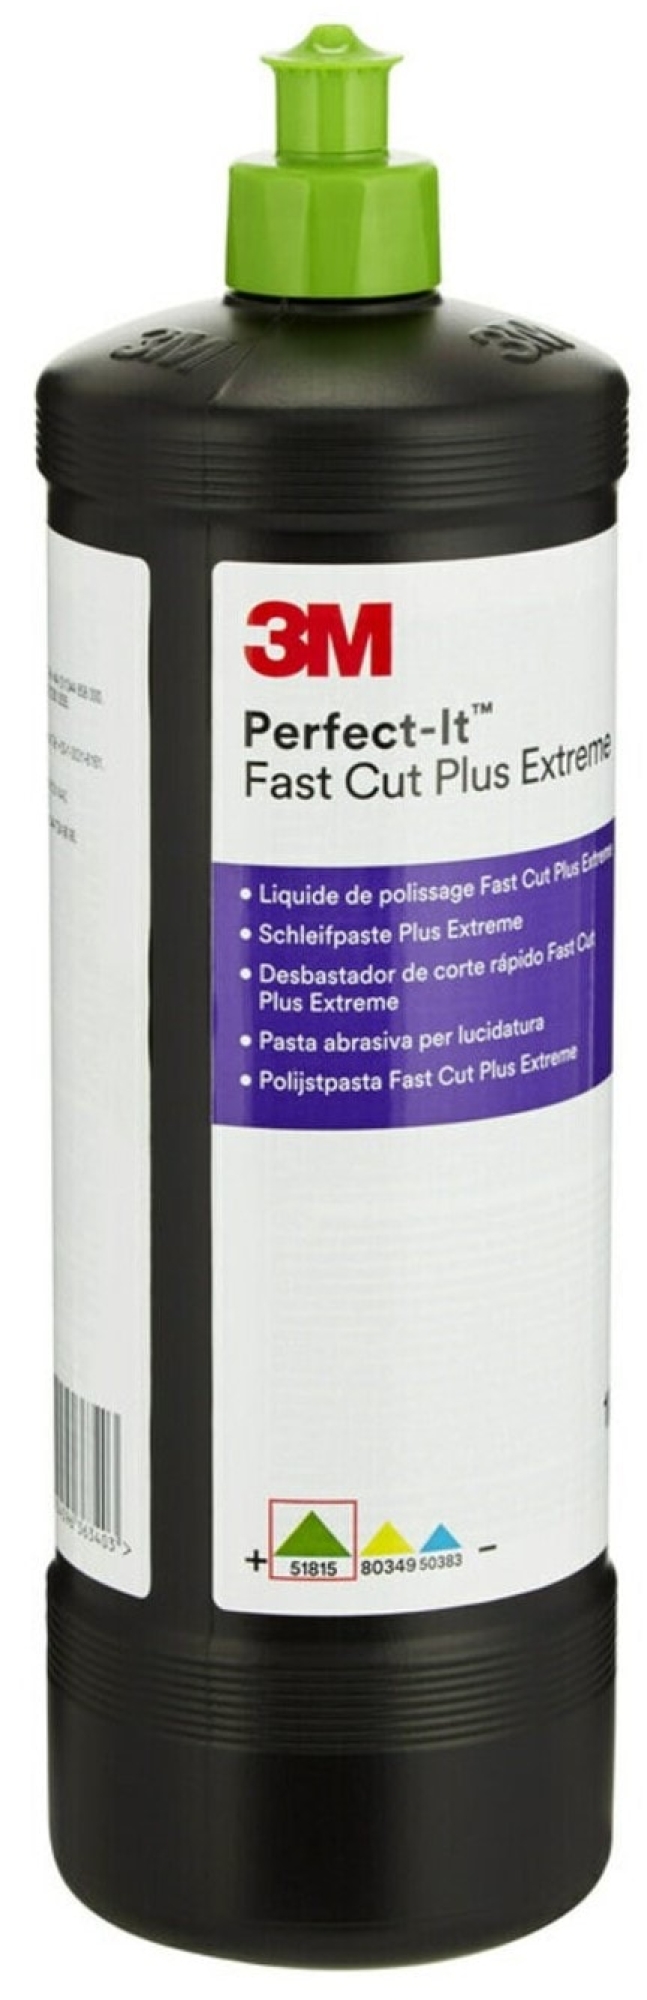 3M™ Perfect-It™ 51815, Fast Cut PLUS Extreme, 1 Liter, Schleifpaste mit hoher Abtragsleistung